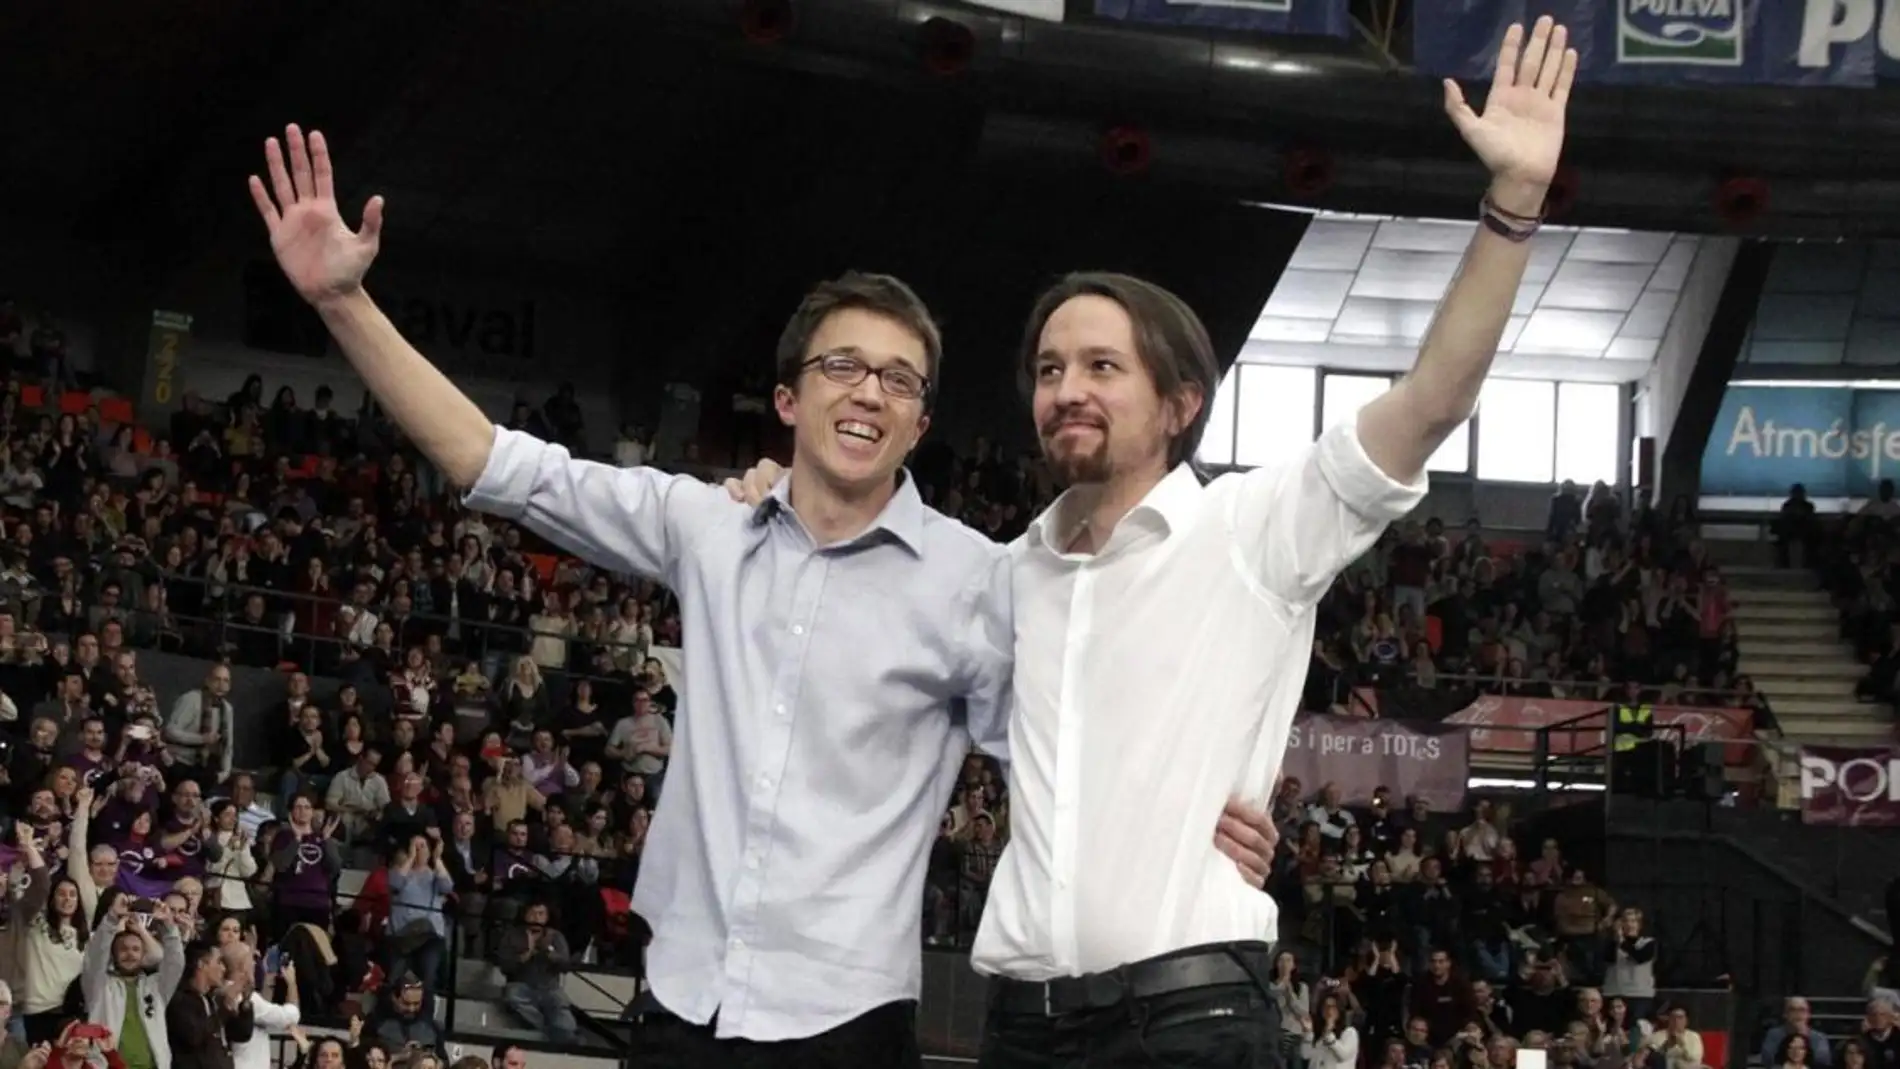 Los políticos Íñigo Errejón y Pablo Iglesias saludan a los asistentes a un mítin de Podemos